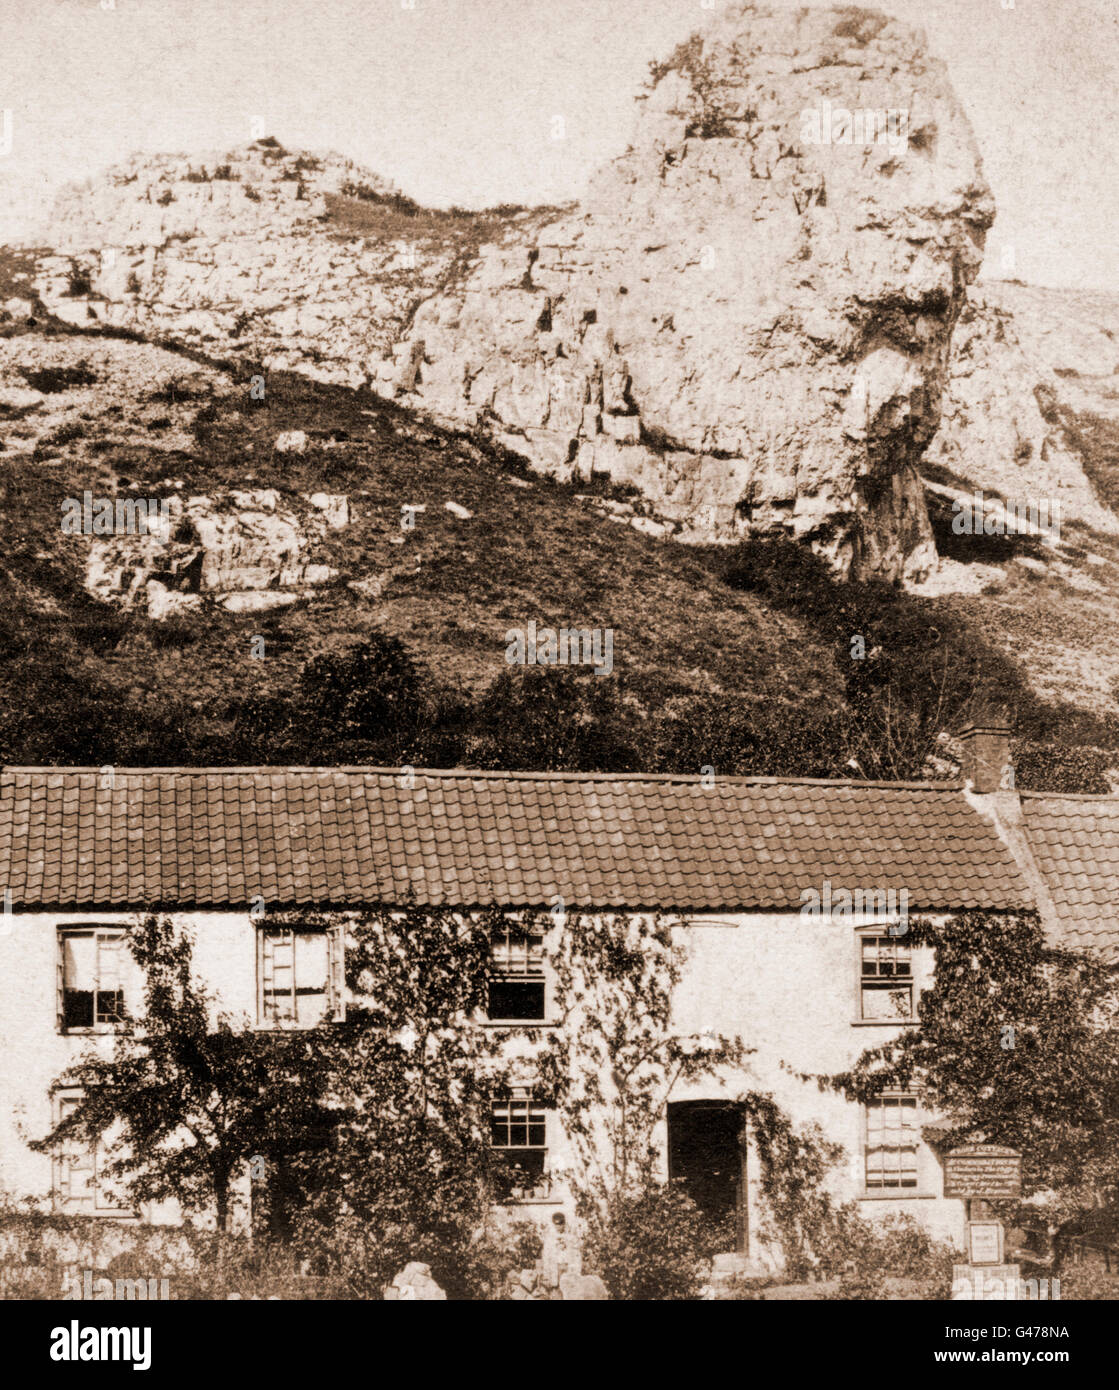 Le Rocher du Lion, Cheddar Gorge, le signe de la publicité pour l'hébergement, d'un plateau/bouilloire et d'hébergement à Rose Cottage, vers 1860 Banque D'Images